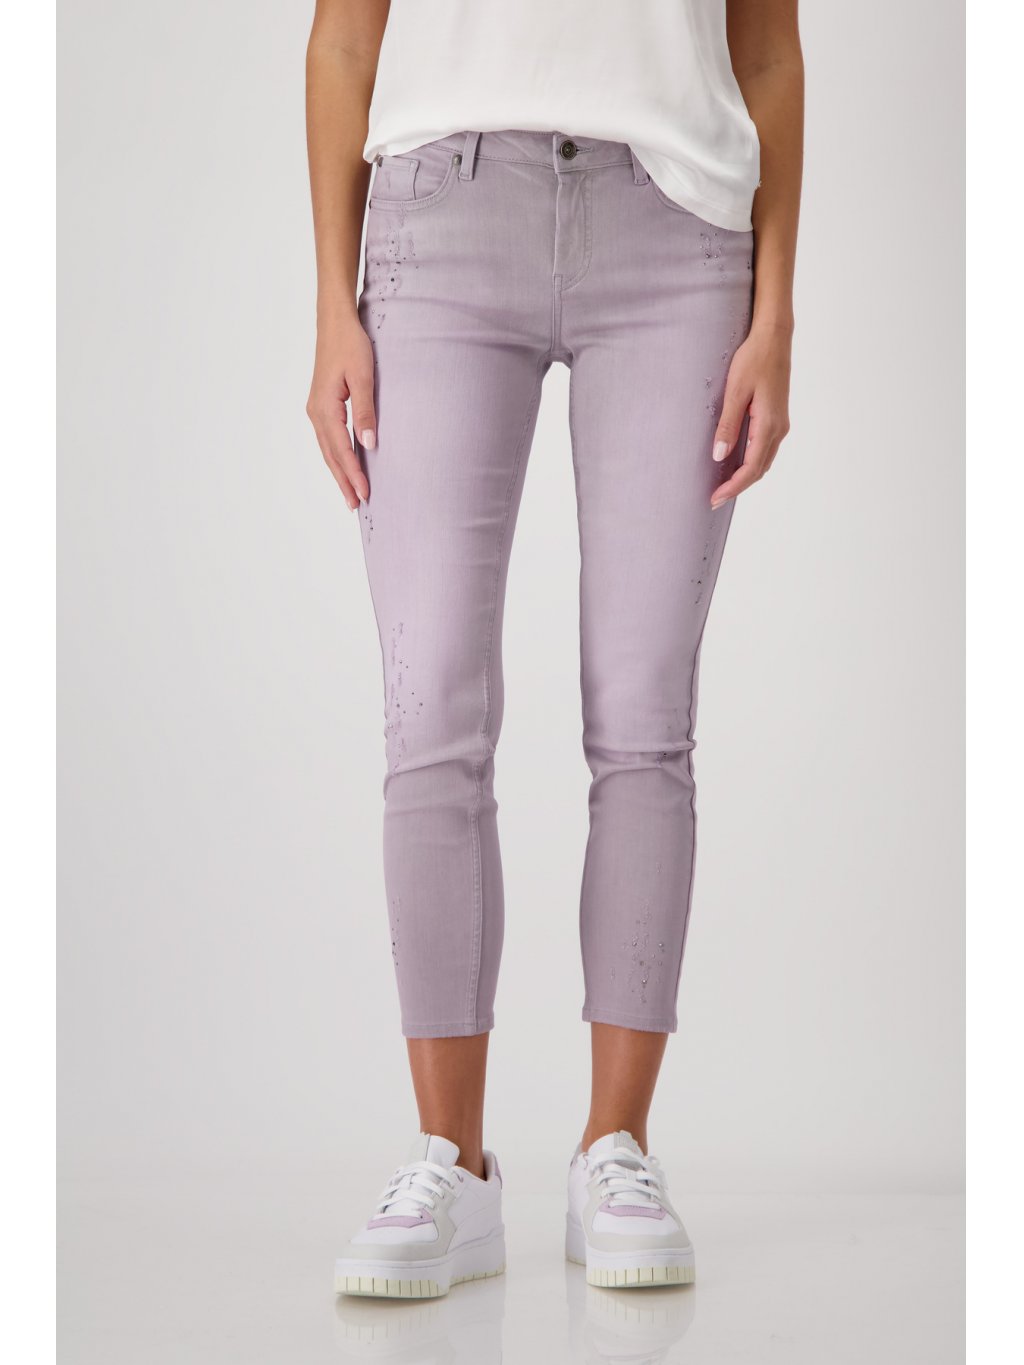 Kalhoty Monari  8255 lila džíny s aplikacemi 